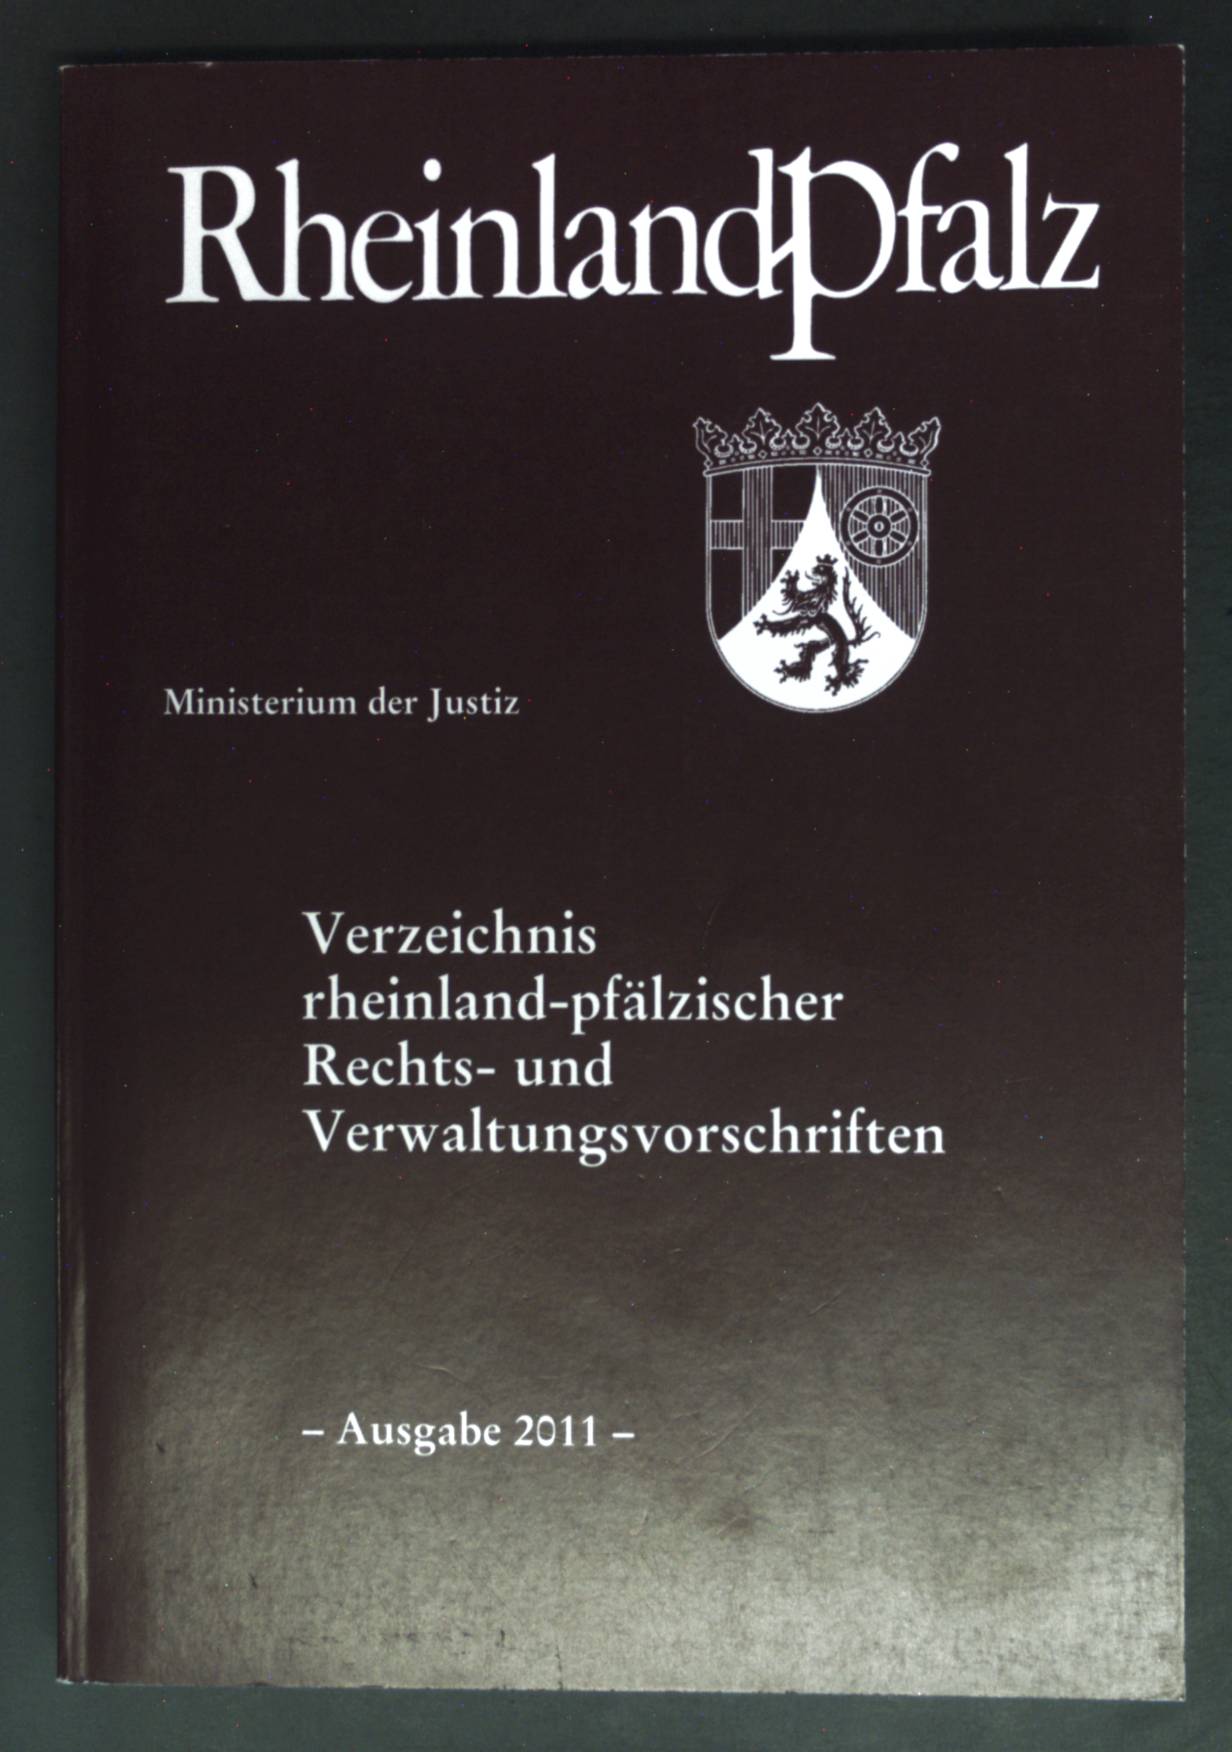 Verzeichnis rheinland-pfälzischer Rechts- und Verwaltungsvorschriften. Rheinland Pfalz - Ministerium der Justiz